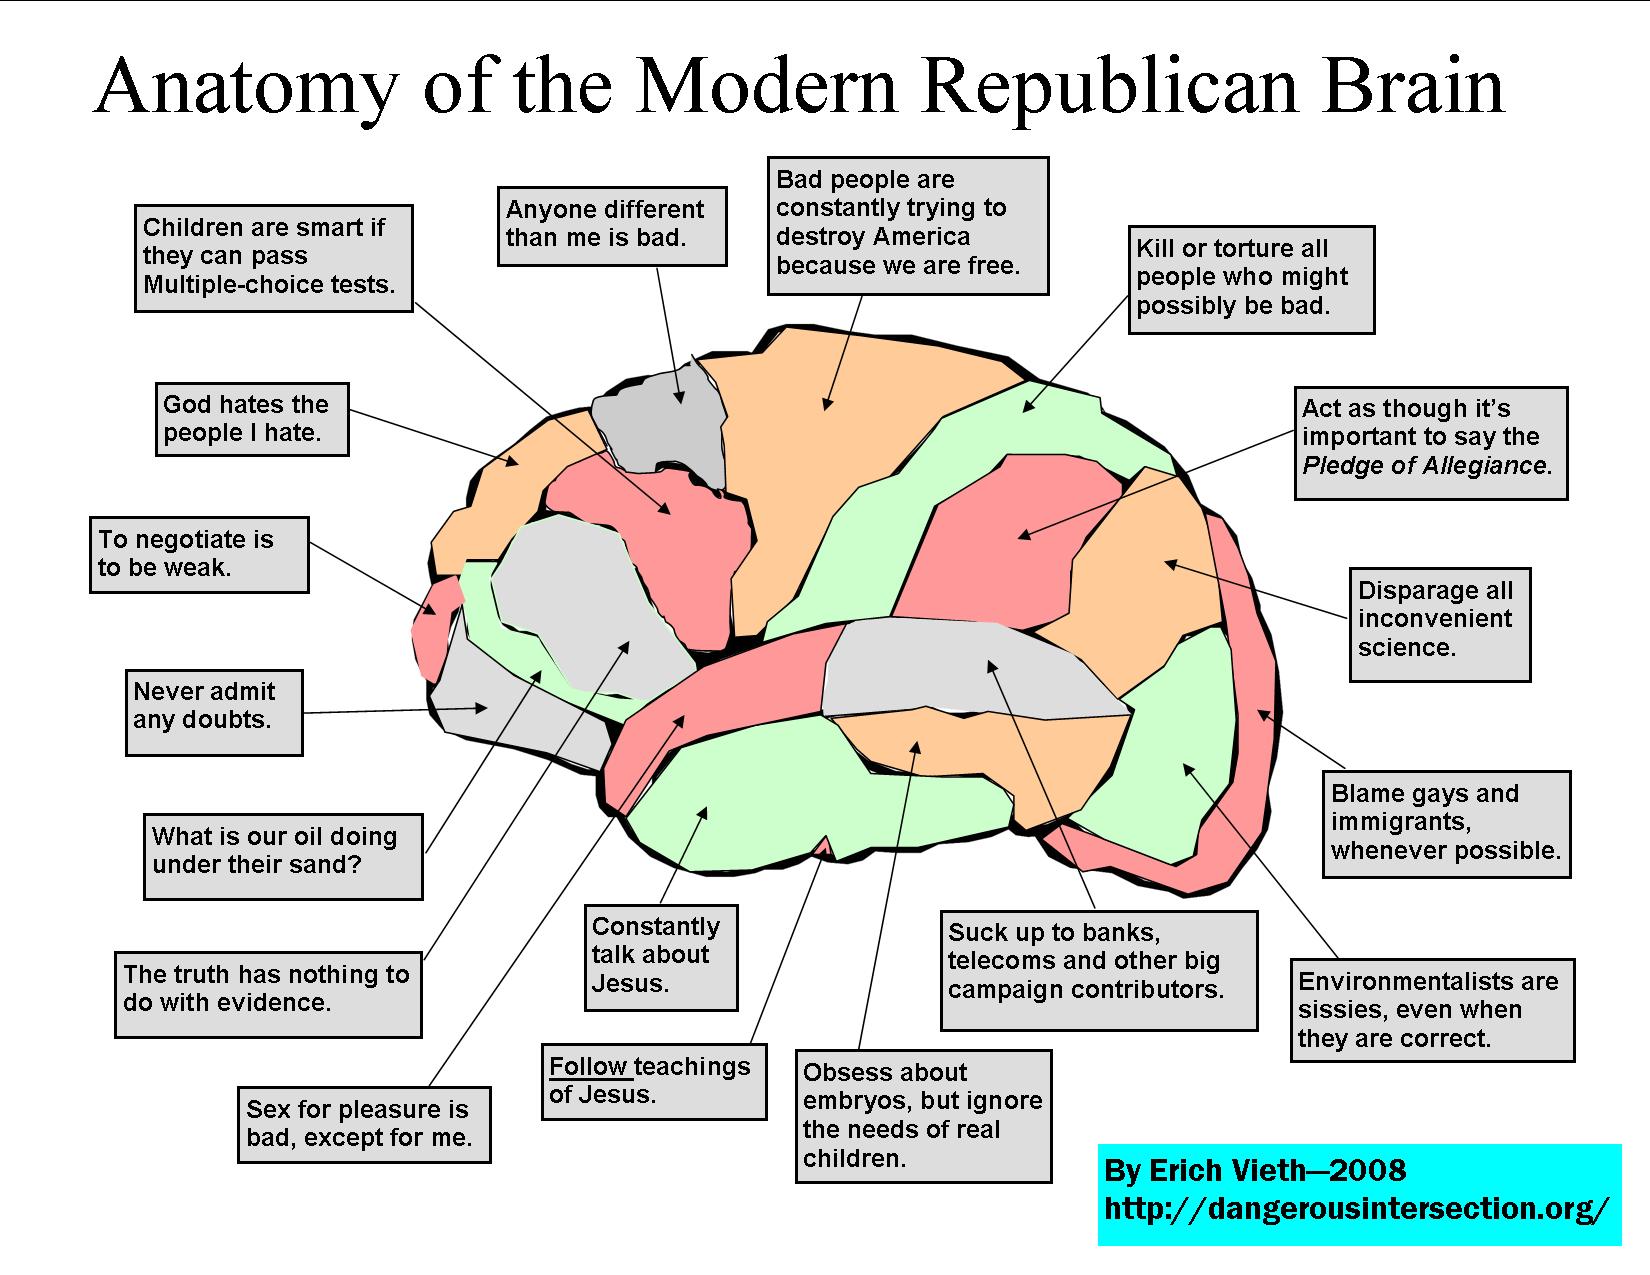 republican-brain-lo-res.jpg